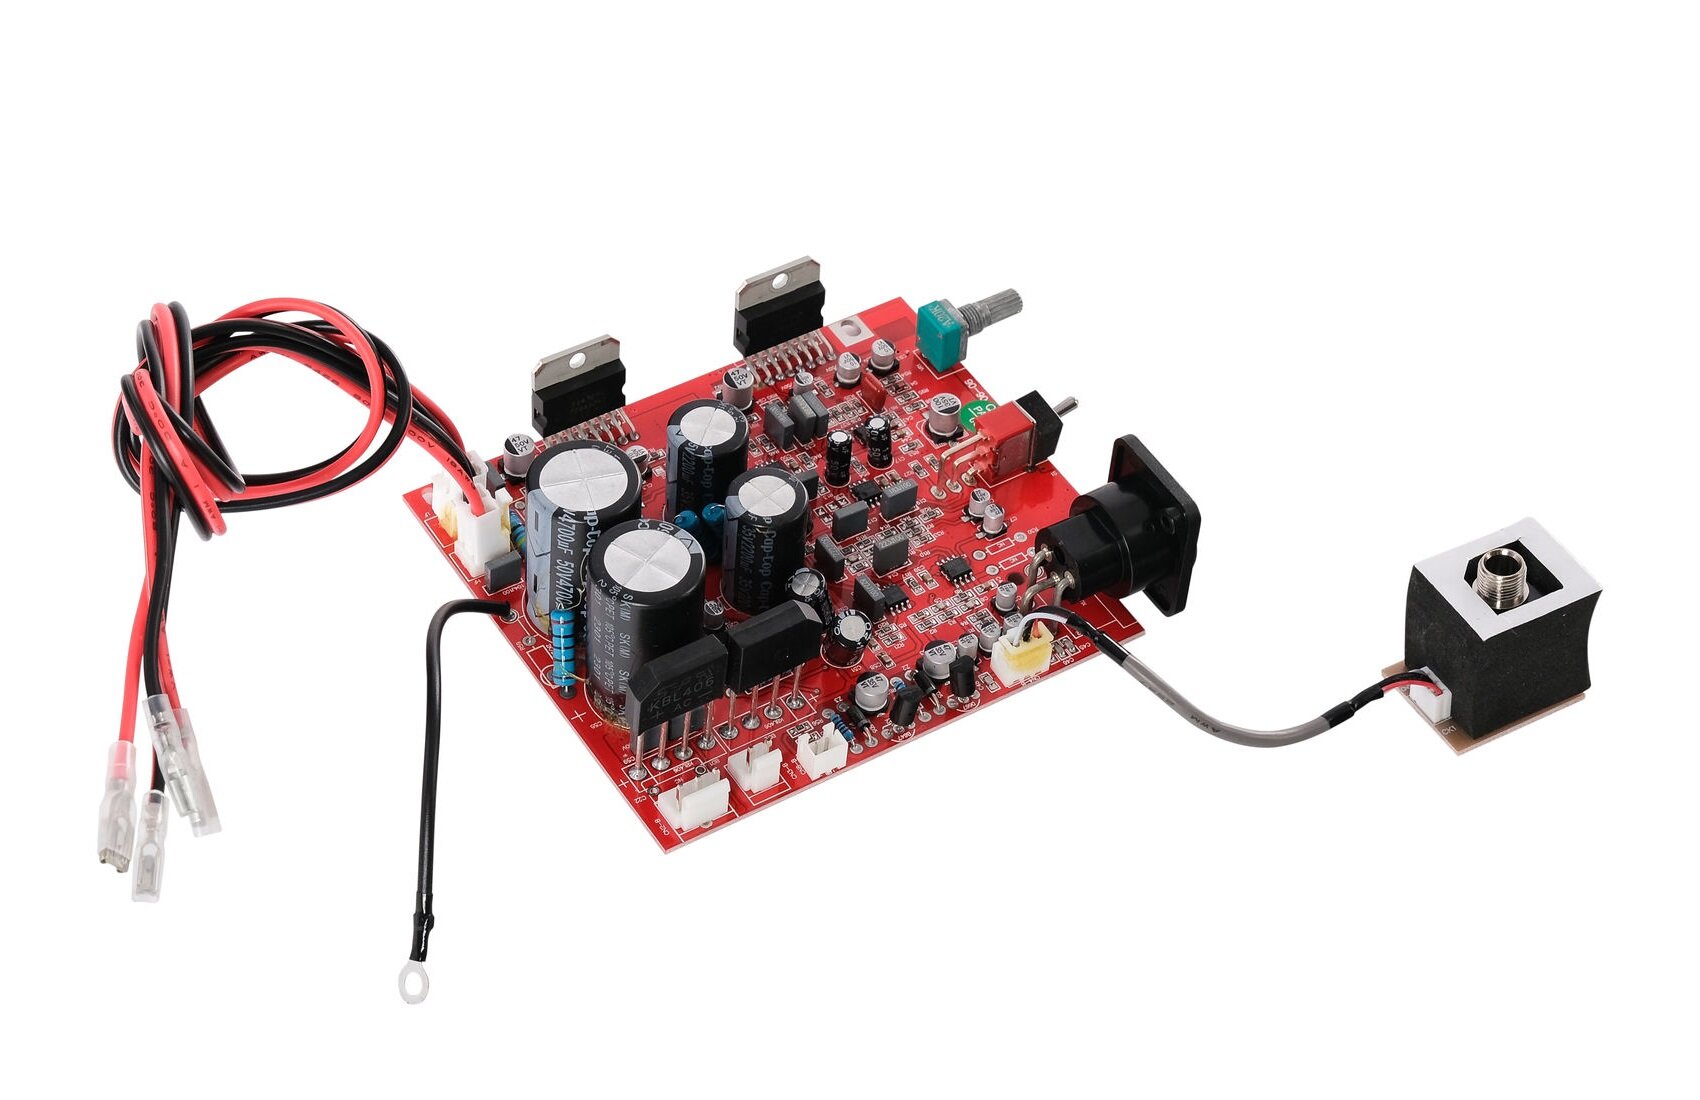 N-Audio Mother-board-C6C8X6X8G6G8M6M8 Плата для акустической системы C6, C8, X6, X8, G6, G8, M6, M8